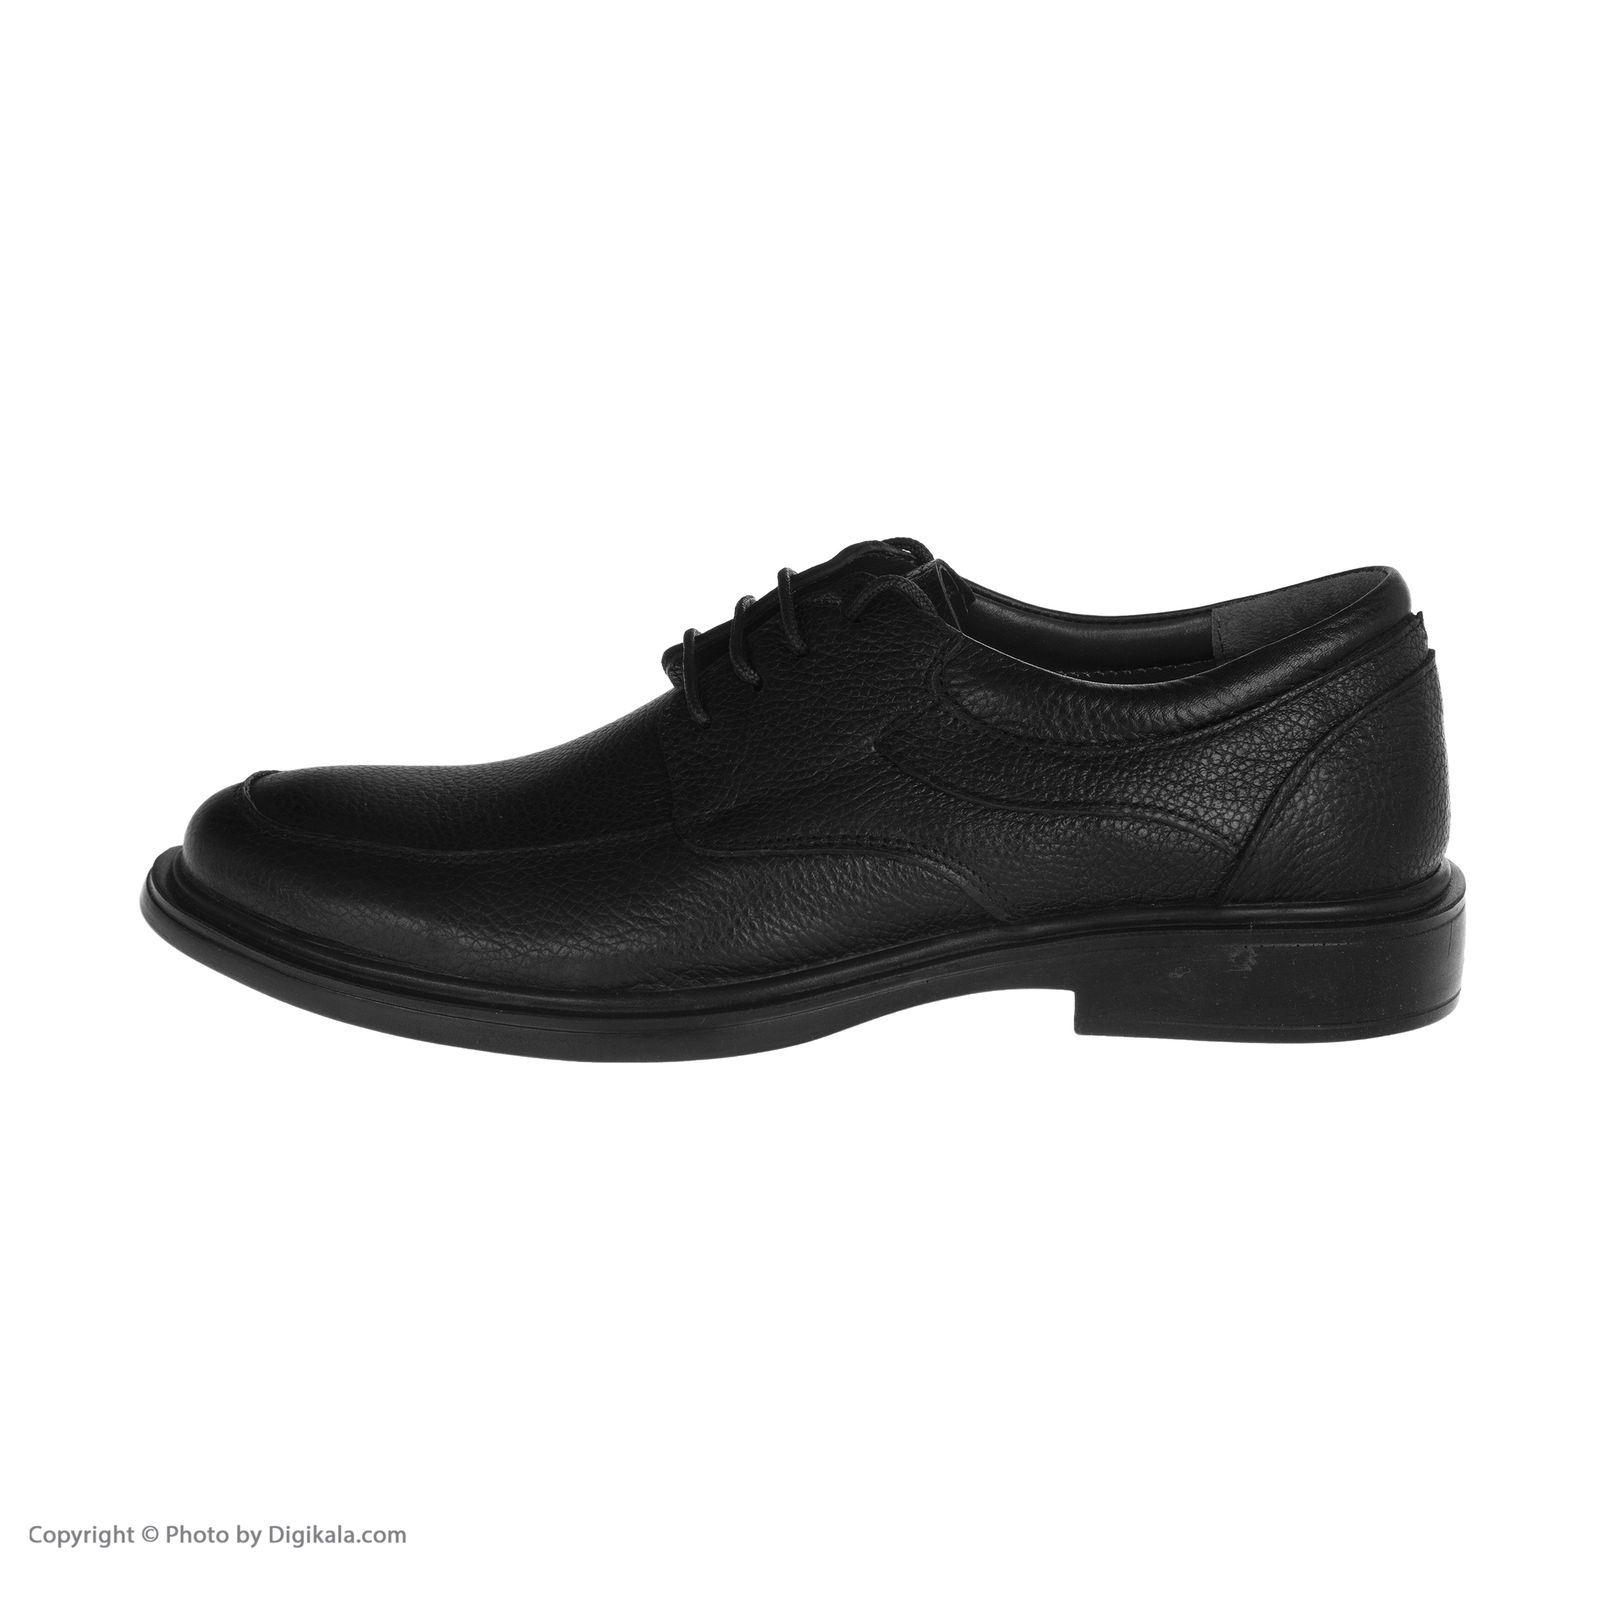  کفش مردانه شیفر مدل 7258B503101 -  - 2